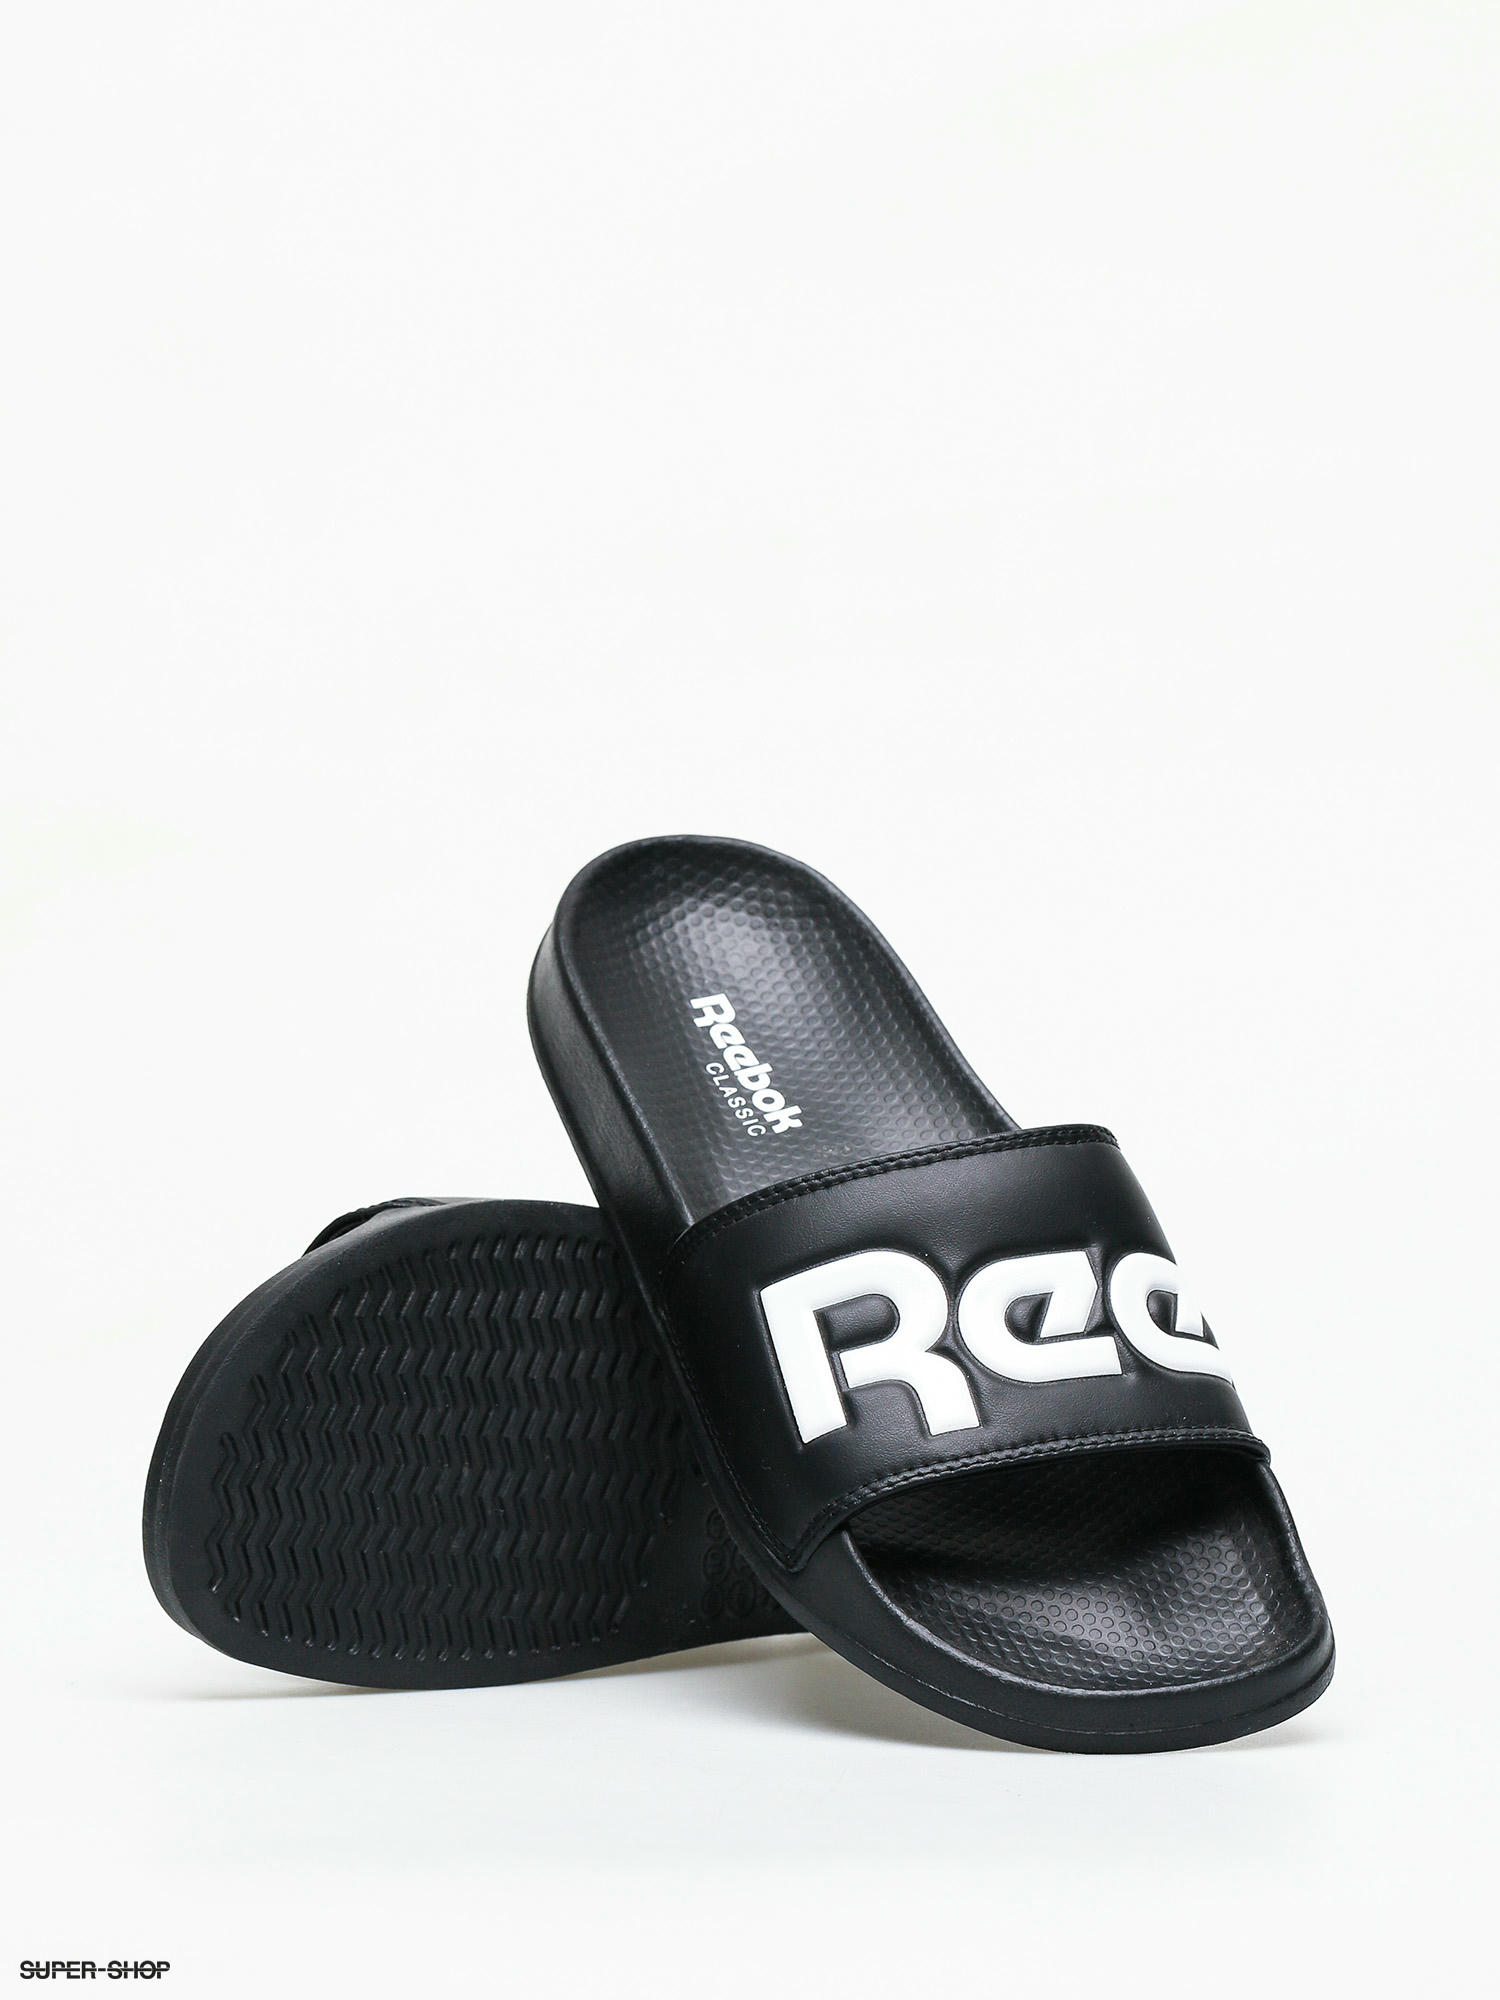 Reebok Classic Slide Black White Men Women Sports Sandal Slippers CN0735